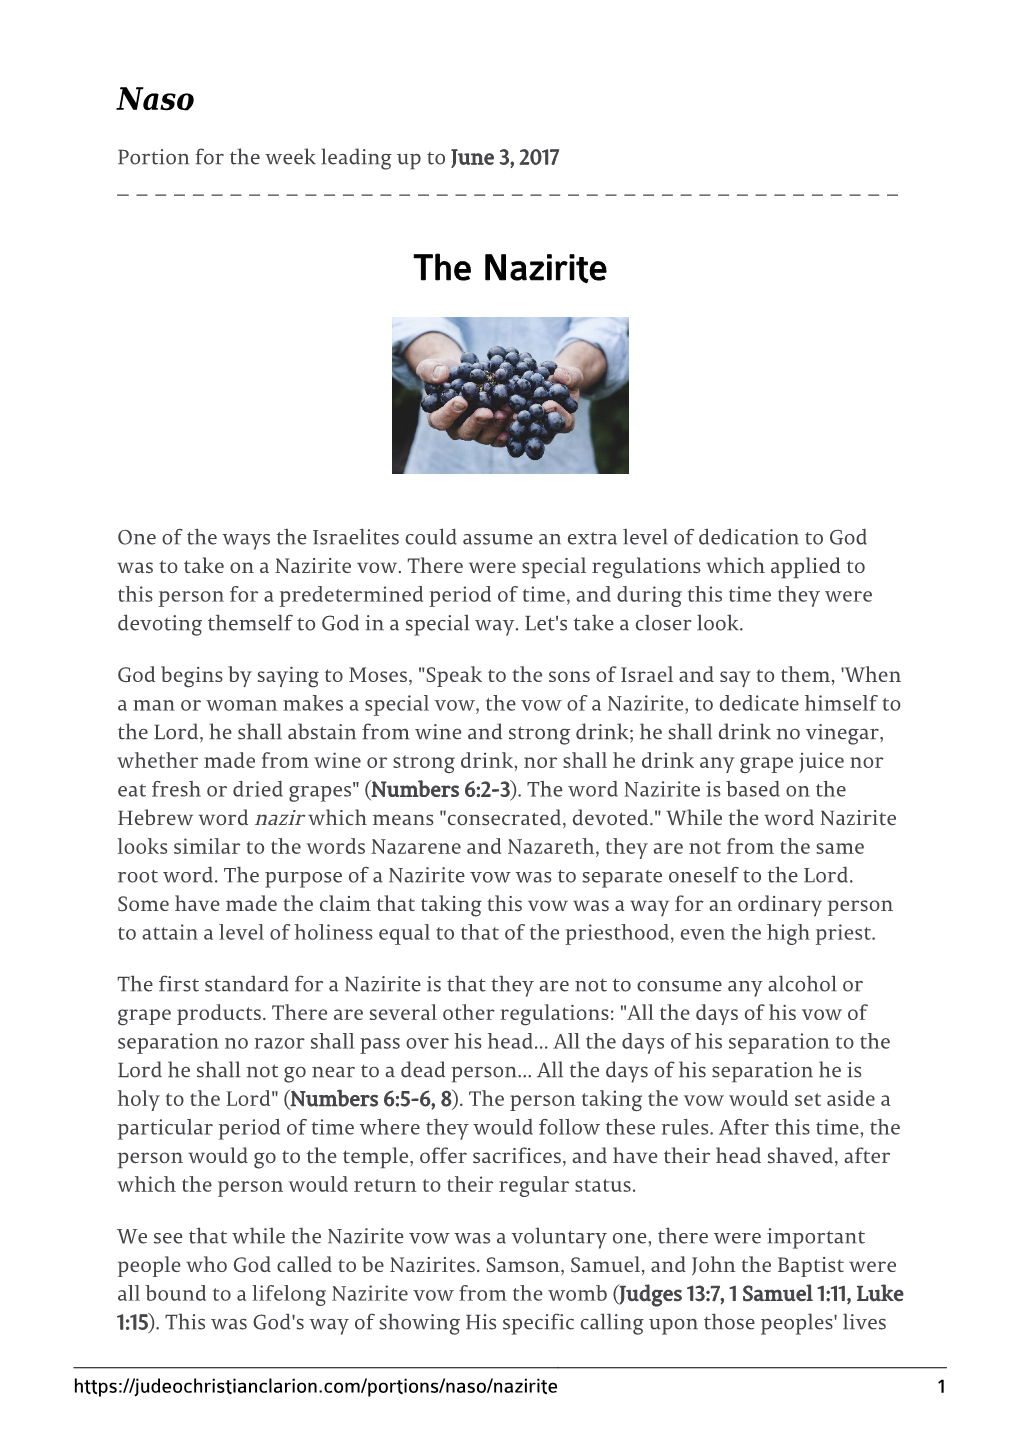 The Nazirite